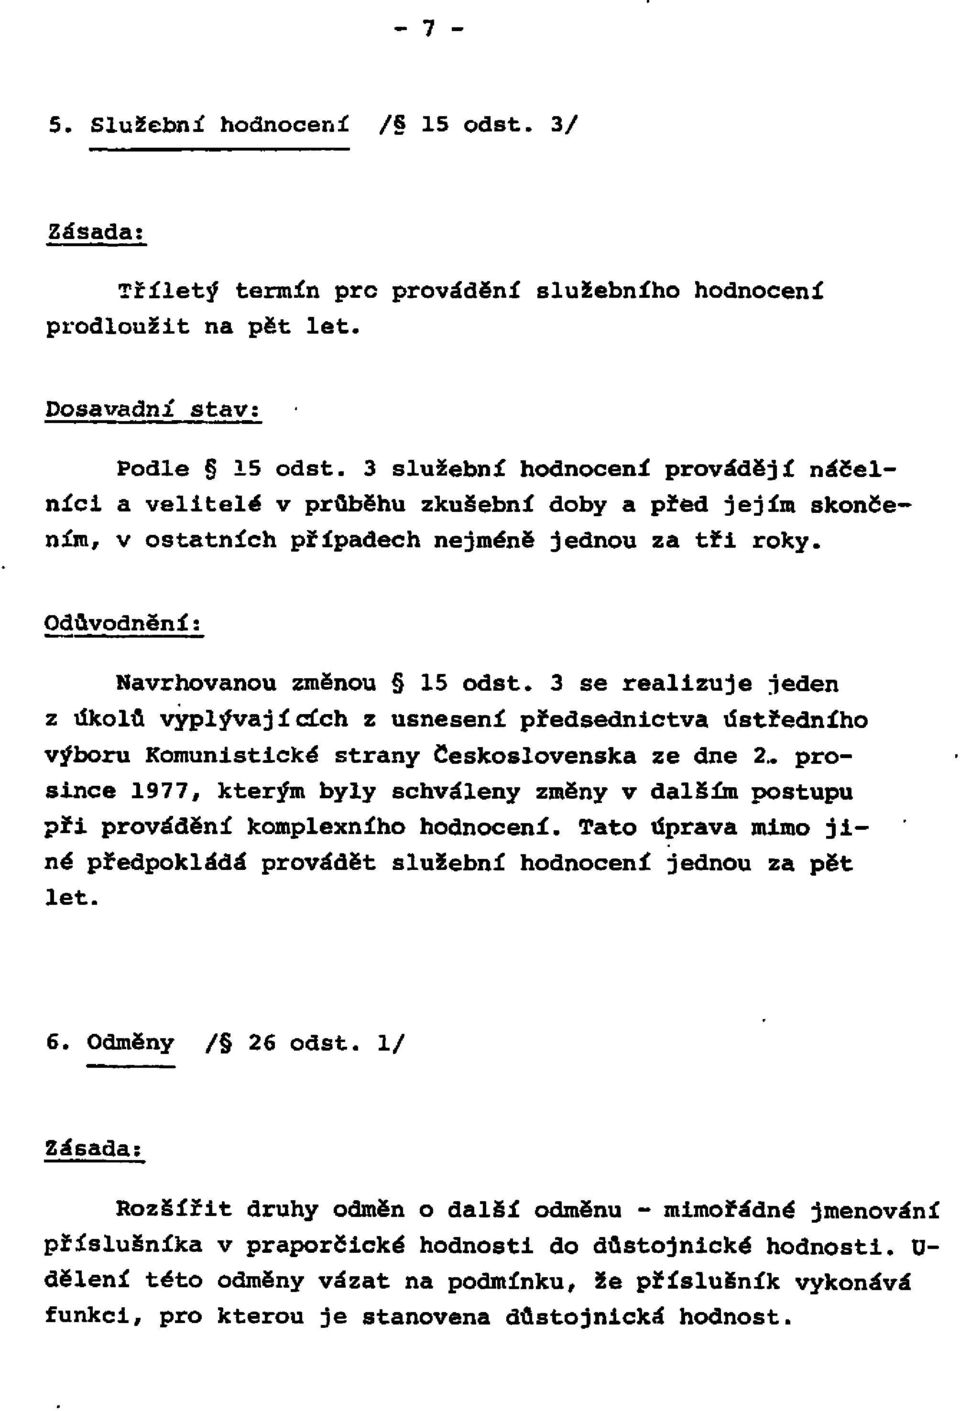 3 se realizuje jeden z úkolů vyplývajících z usnesení předsednictva ústředního výboru Komunistické strany Československa ze dne 2.